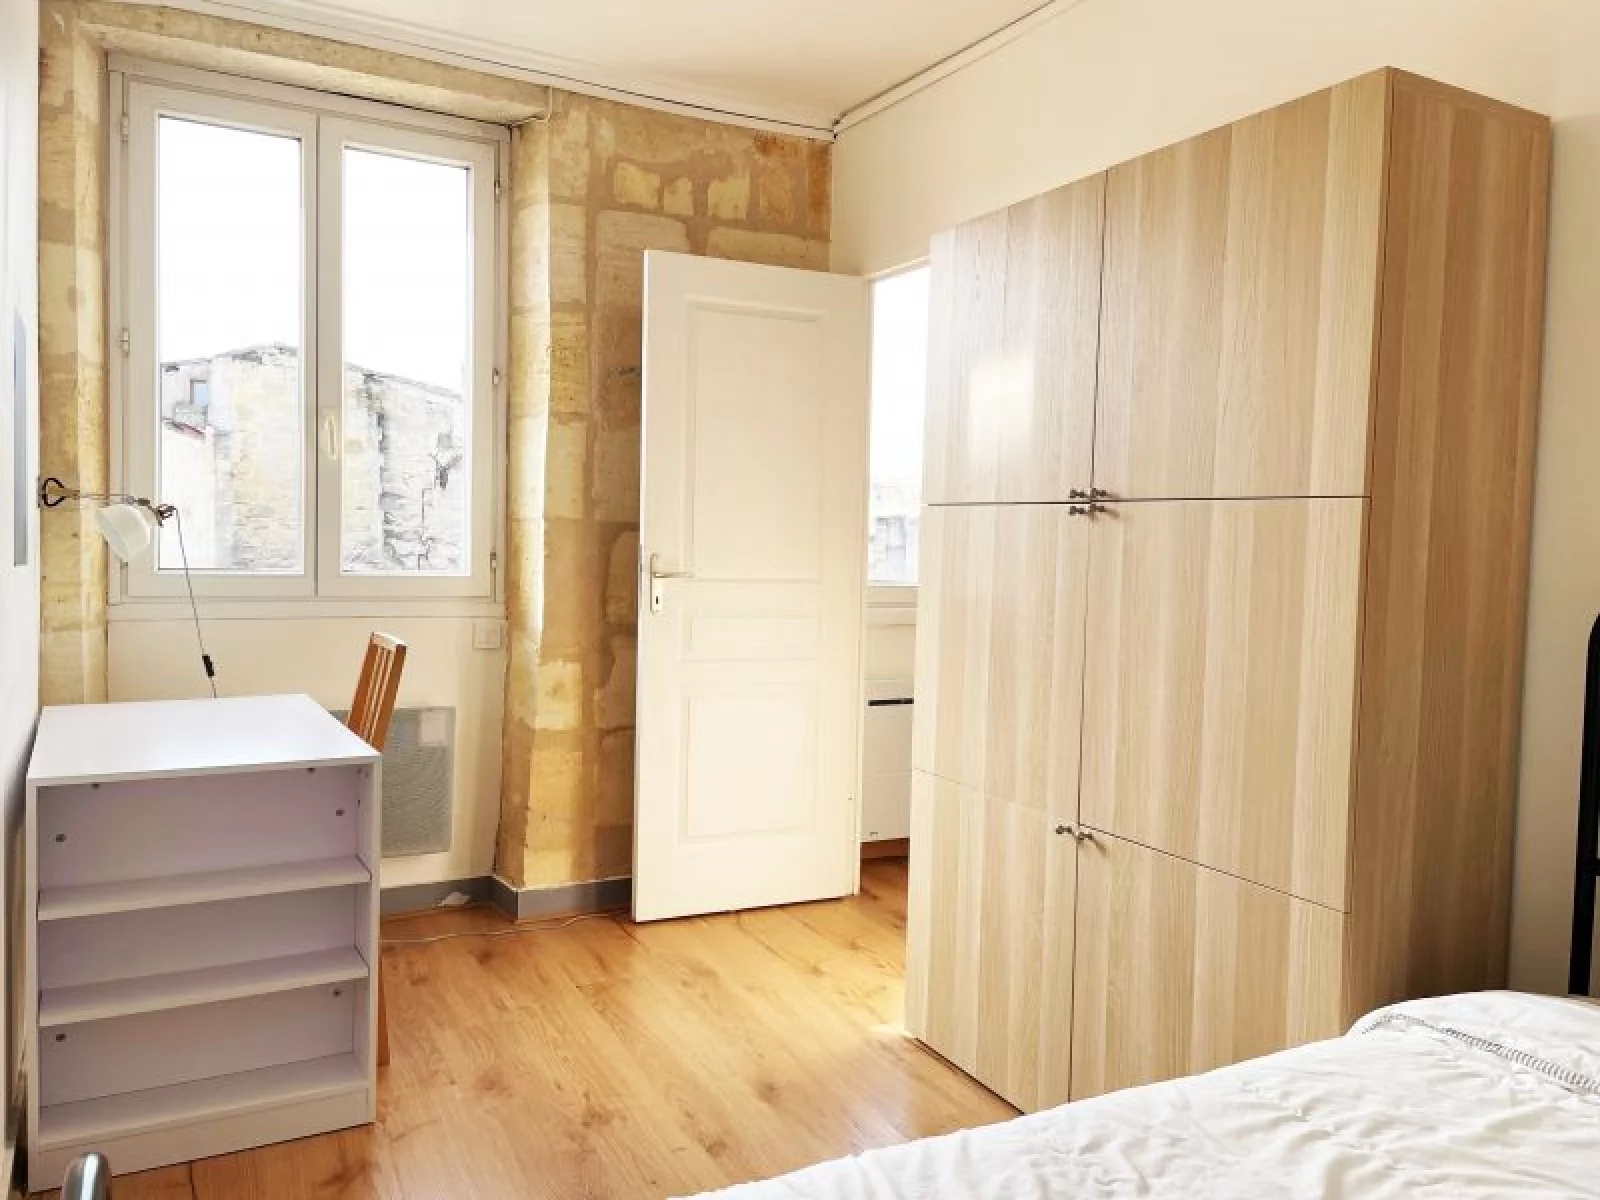 Location appartement meublé 3 pièces 45m² (Bordeaux - Victoire)